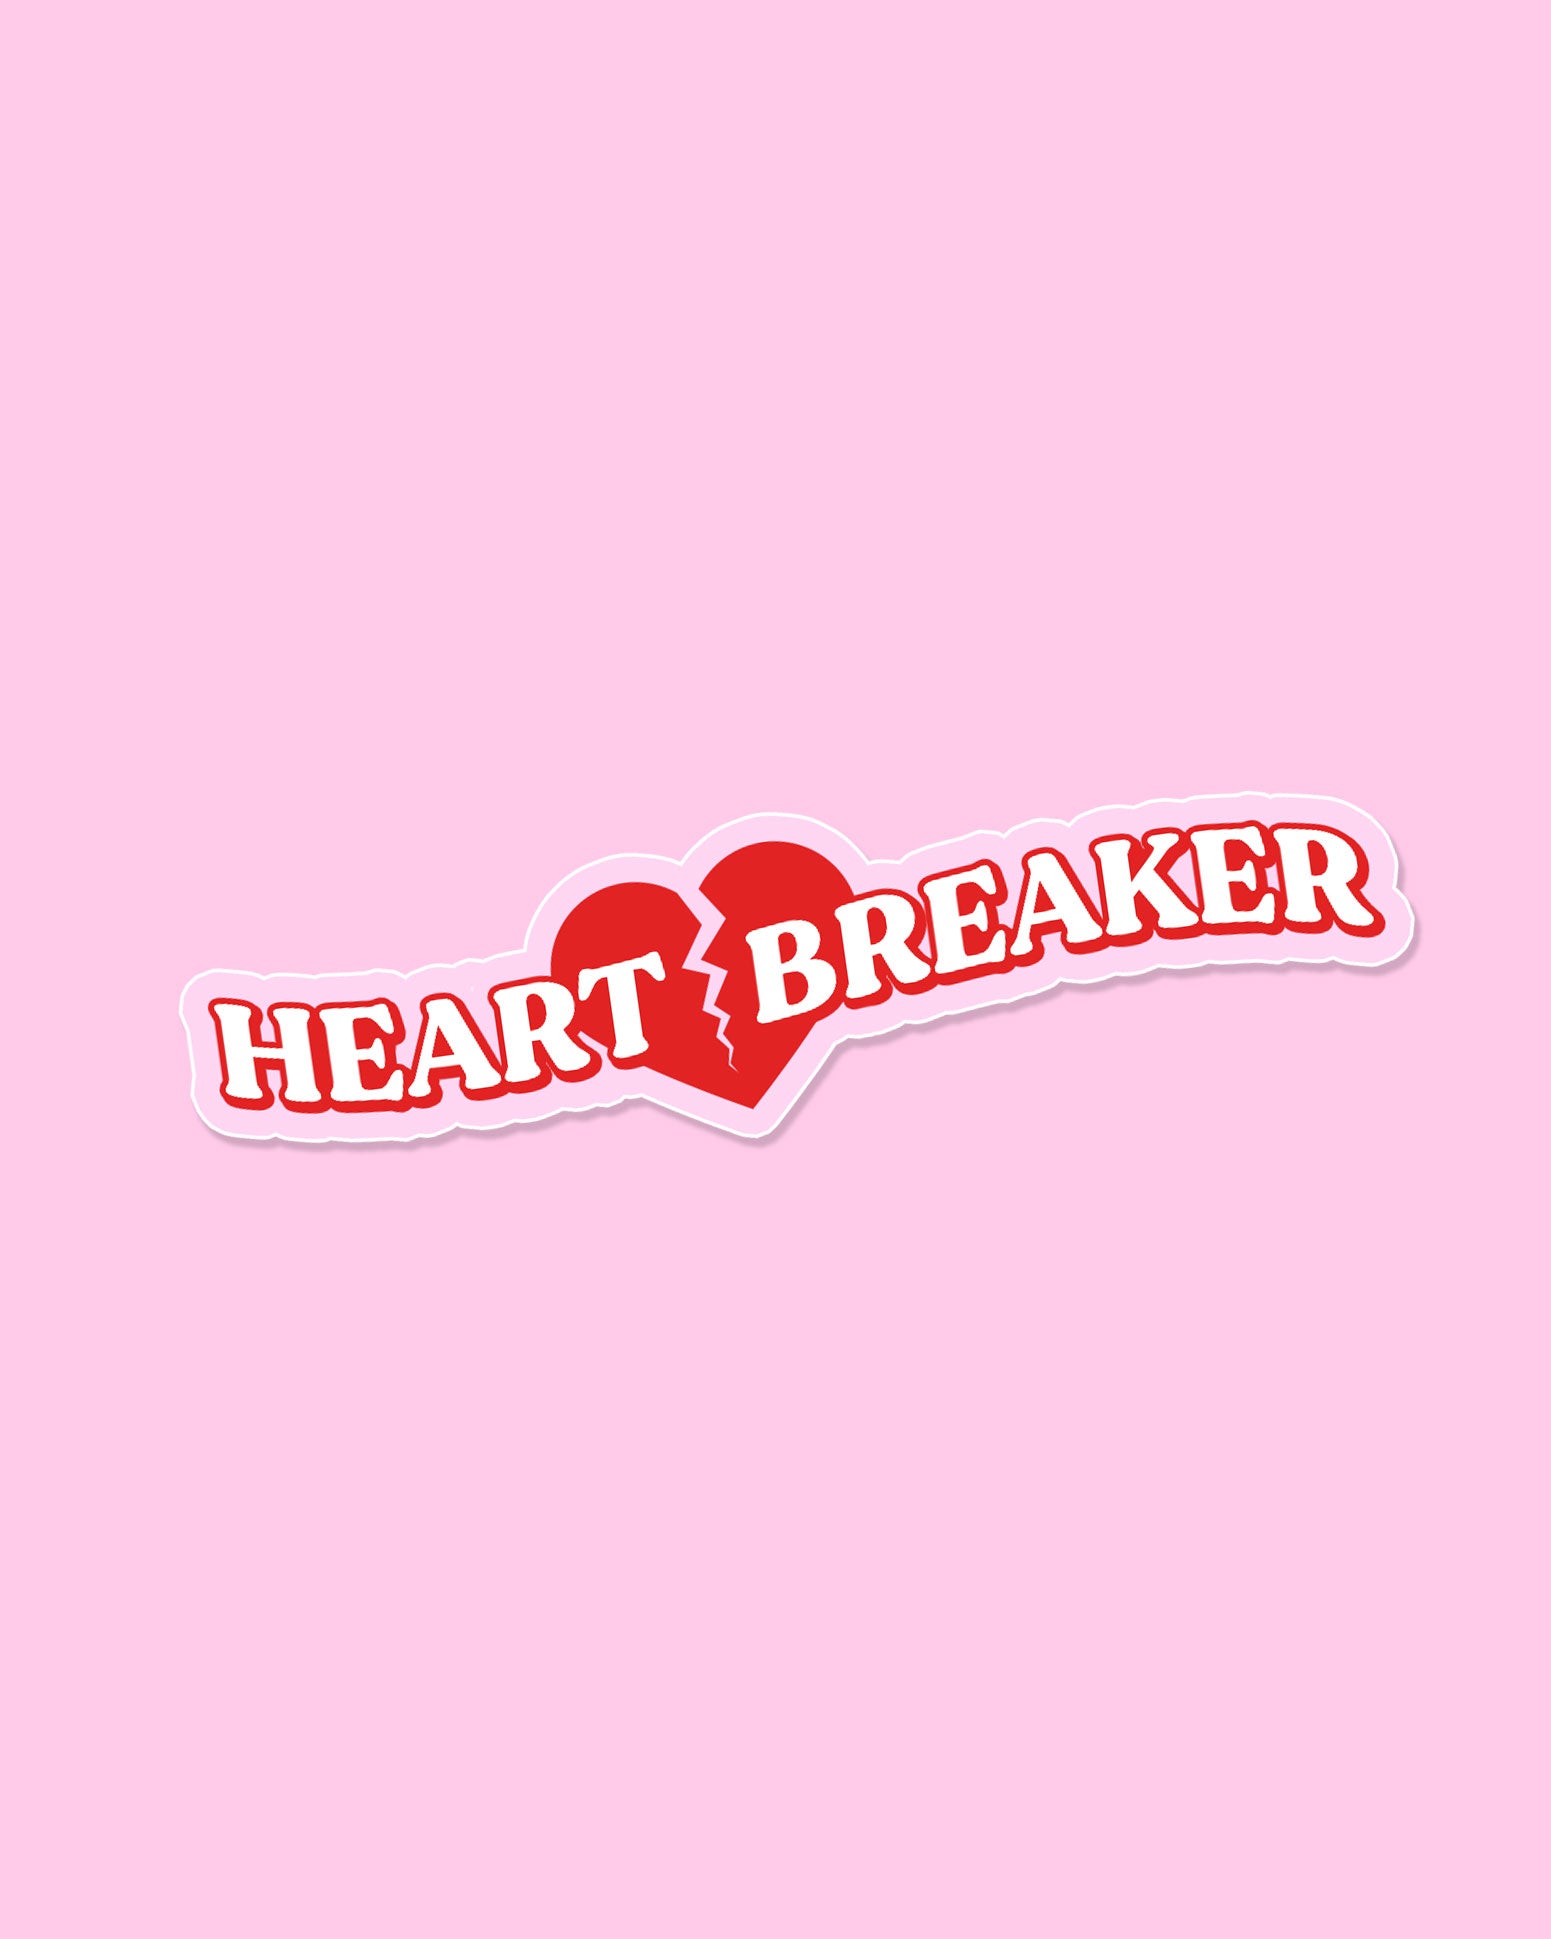 heartbreaker2.jpg